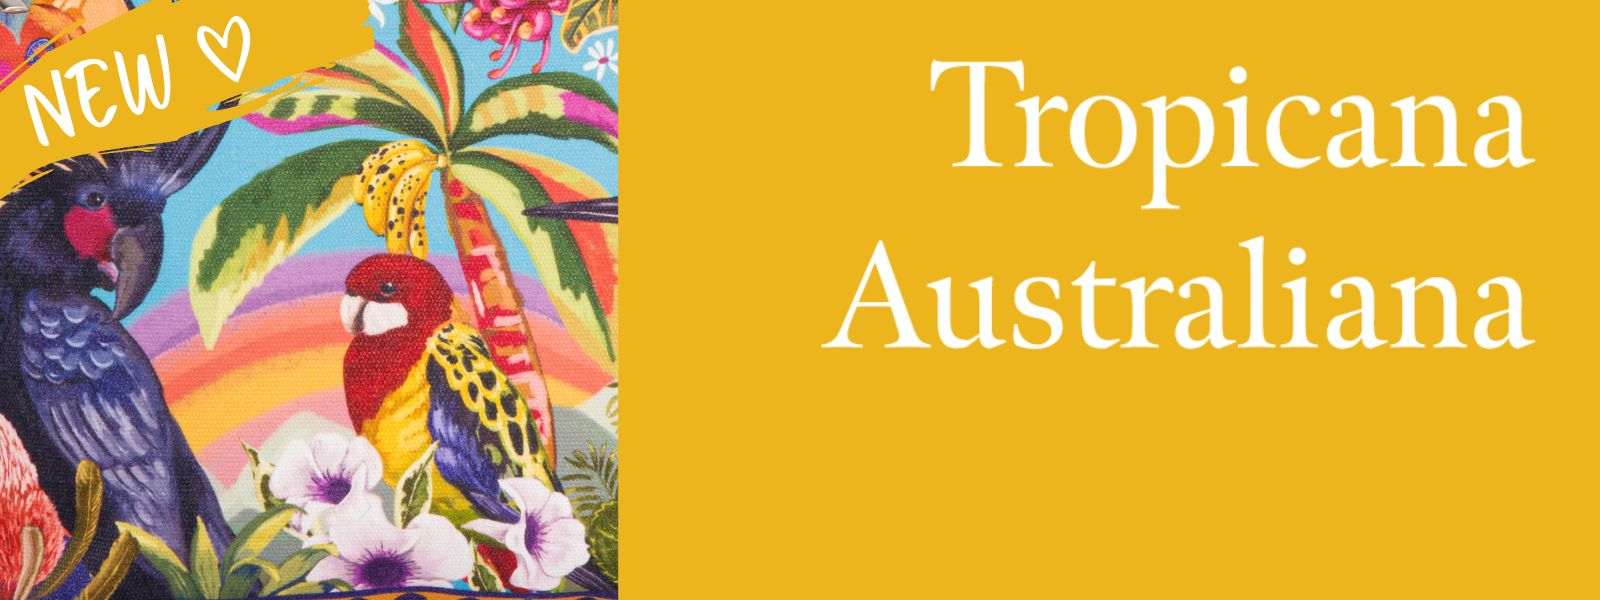 Tropicana Australiana collection by Murilo Manzini for La La Land